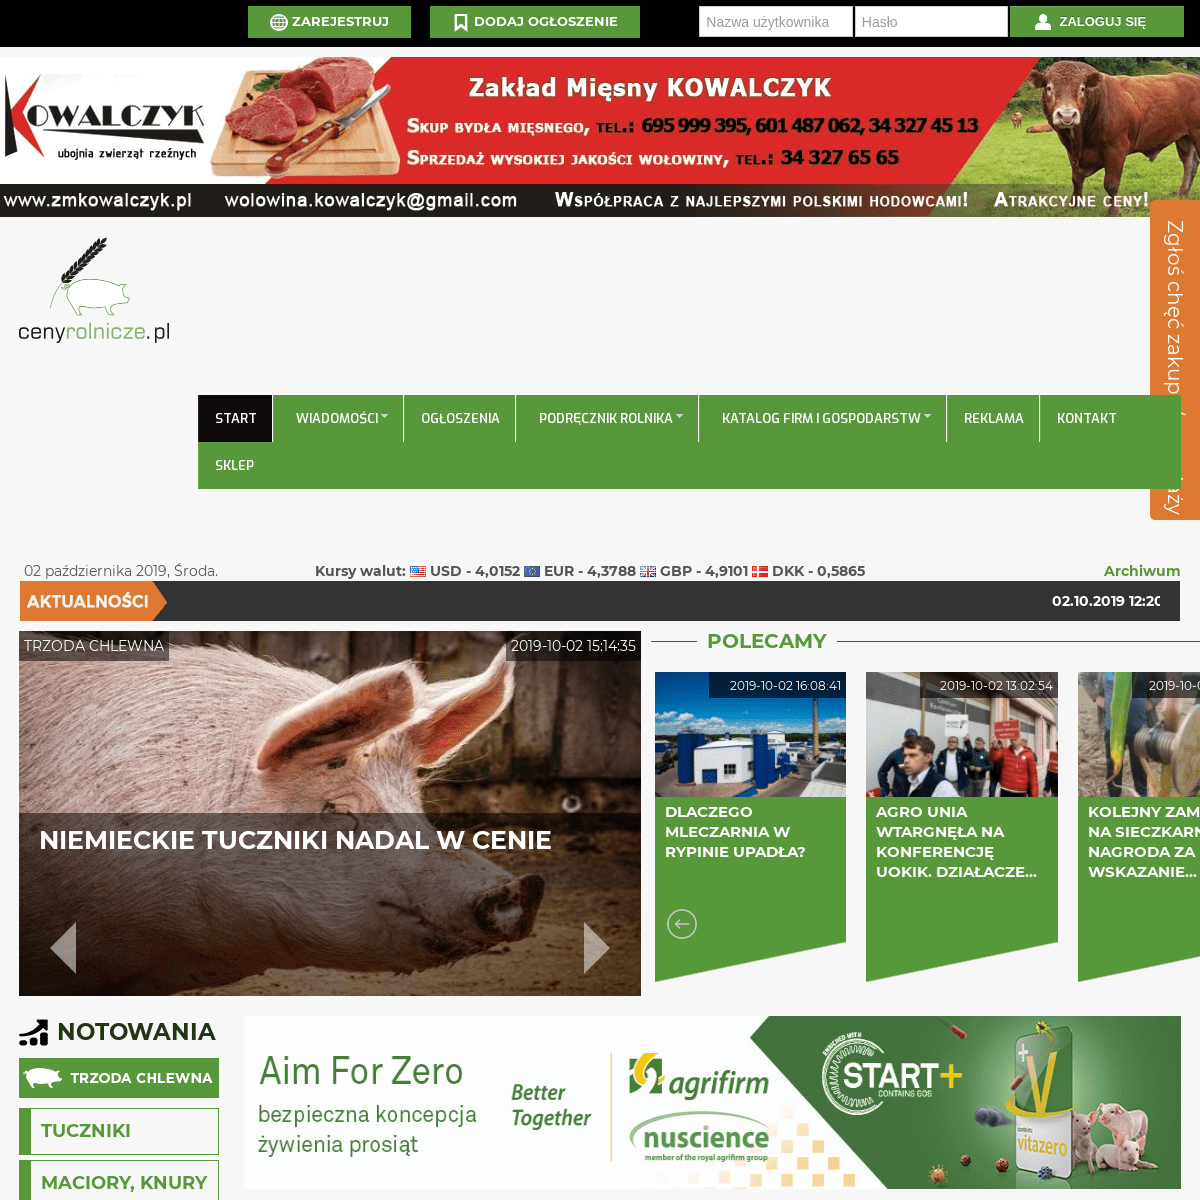 Ogłoszenia rolnicze, skup bydła, ceny produktów rolnych, tuczników i warchlaków – portal Cenyrolnicze.pl